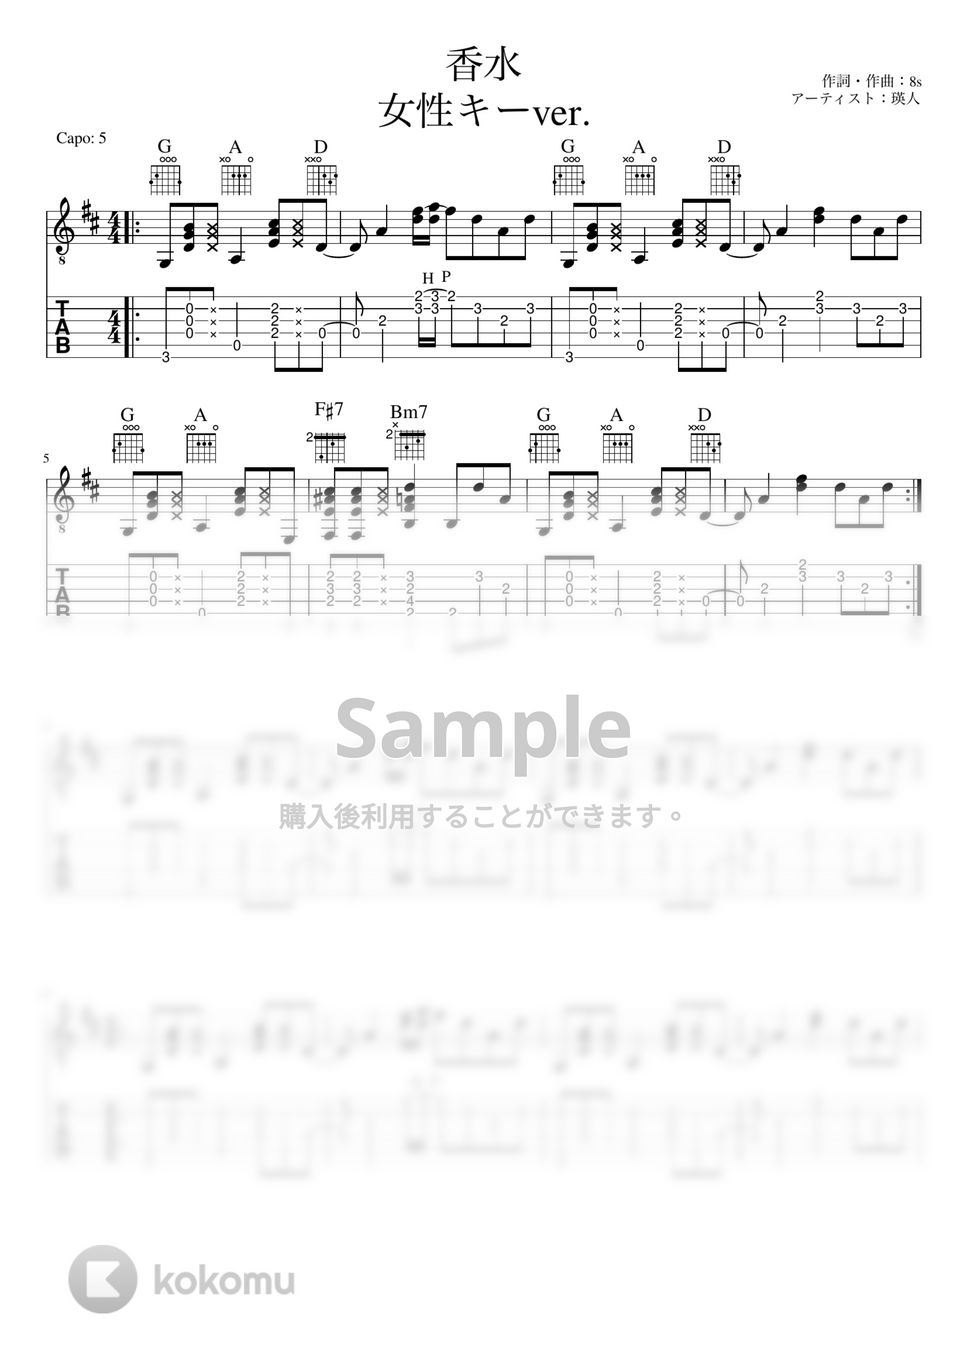 瑛人 - 香水（女性キーver. +4） (リードギター) by J-ROCKチャンネル